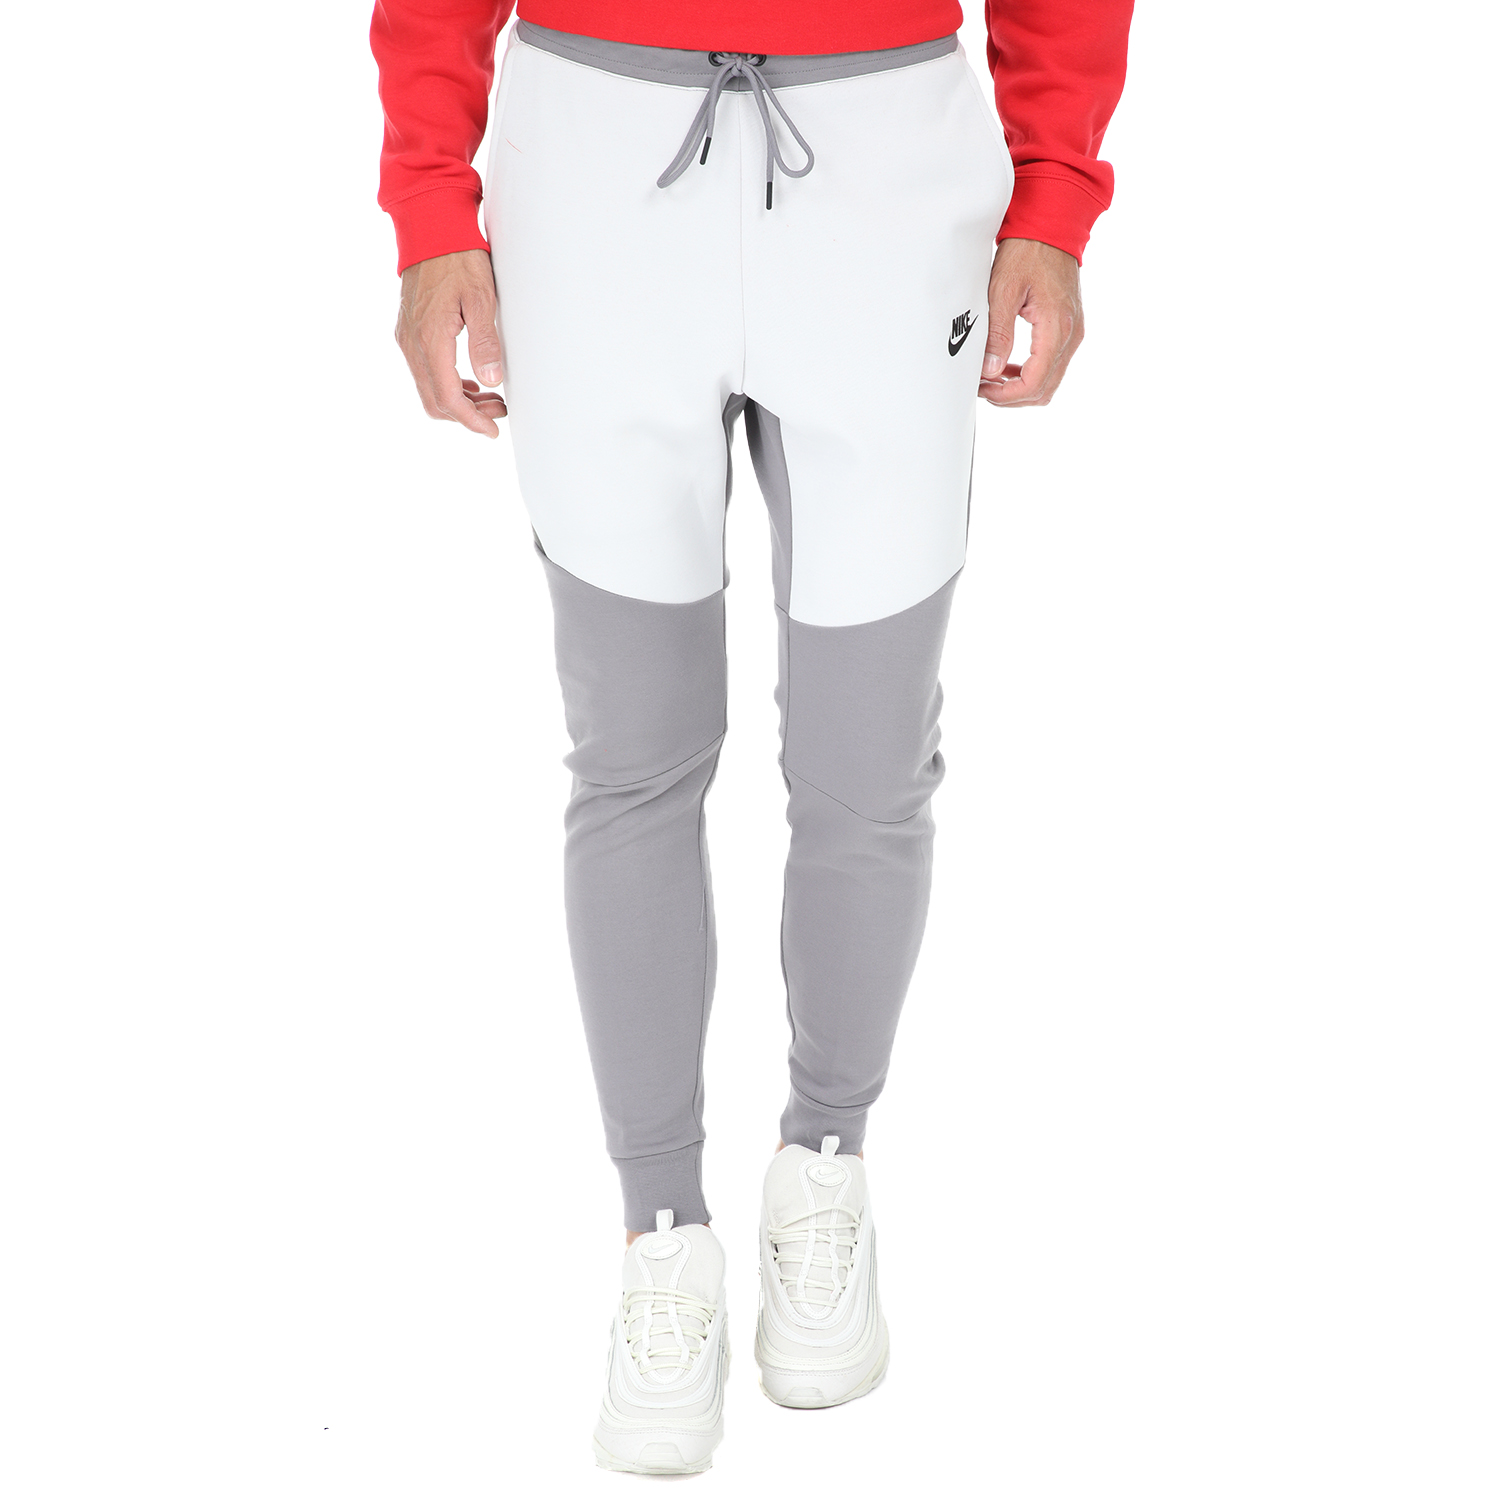 Ανδρικά/Ρούχα/Αθλητικά/Φόρμες NIKE - Ανδρικό παντελόνι φόρμας Nike NSW TCH FLC JGGR γκρί-άσπρο